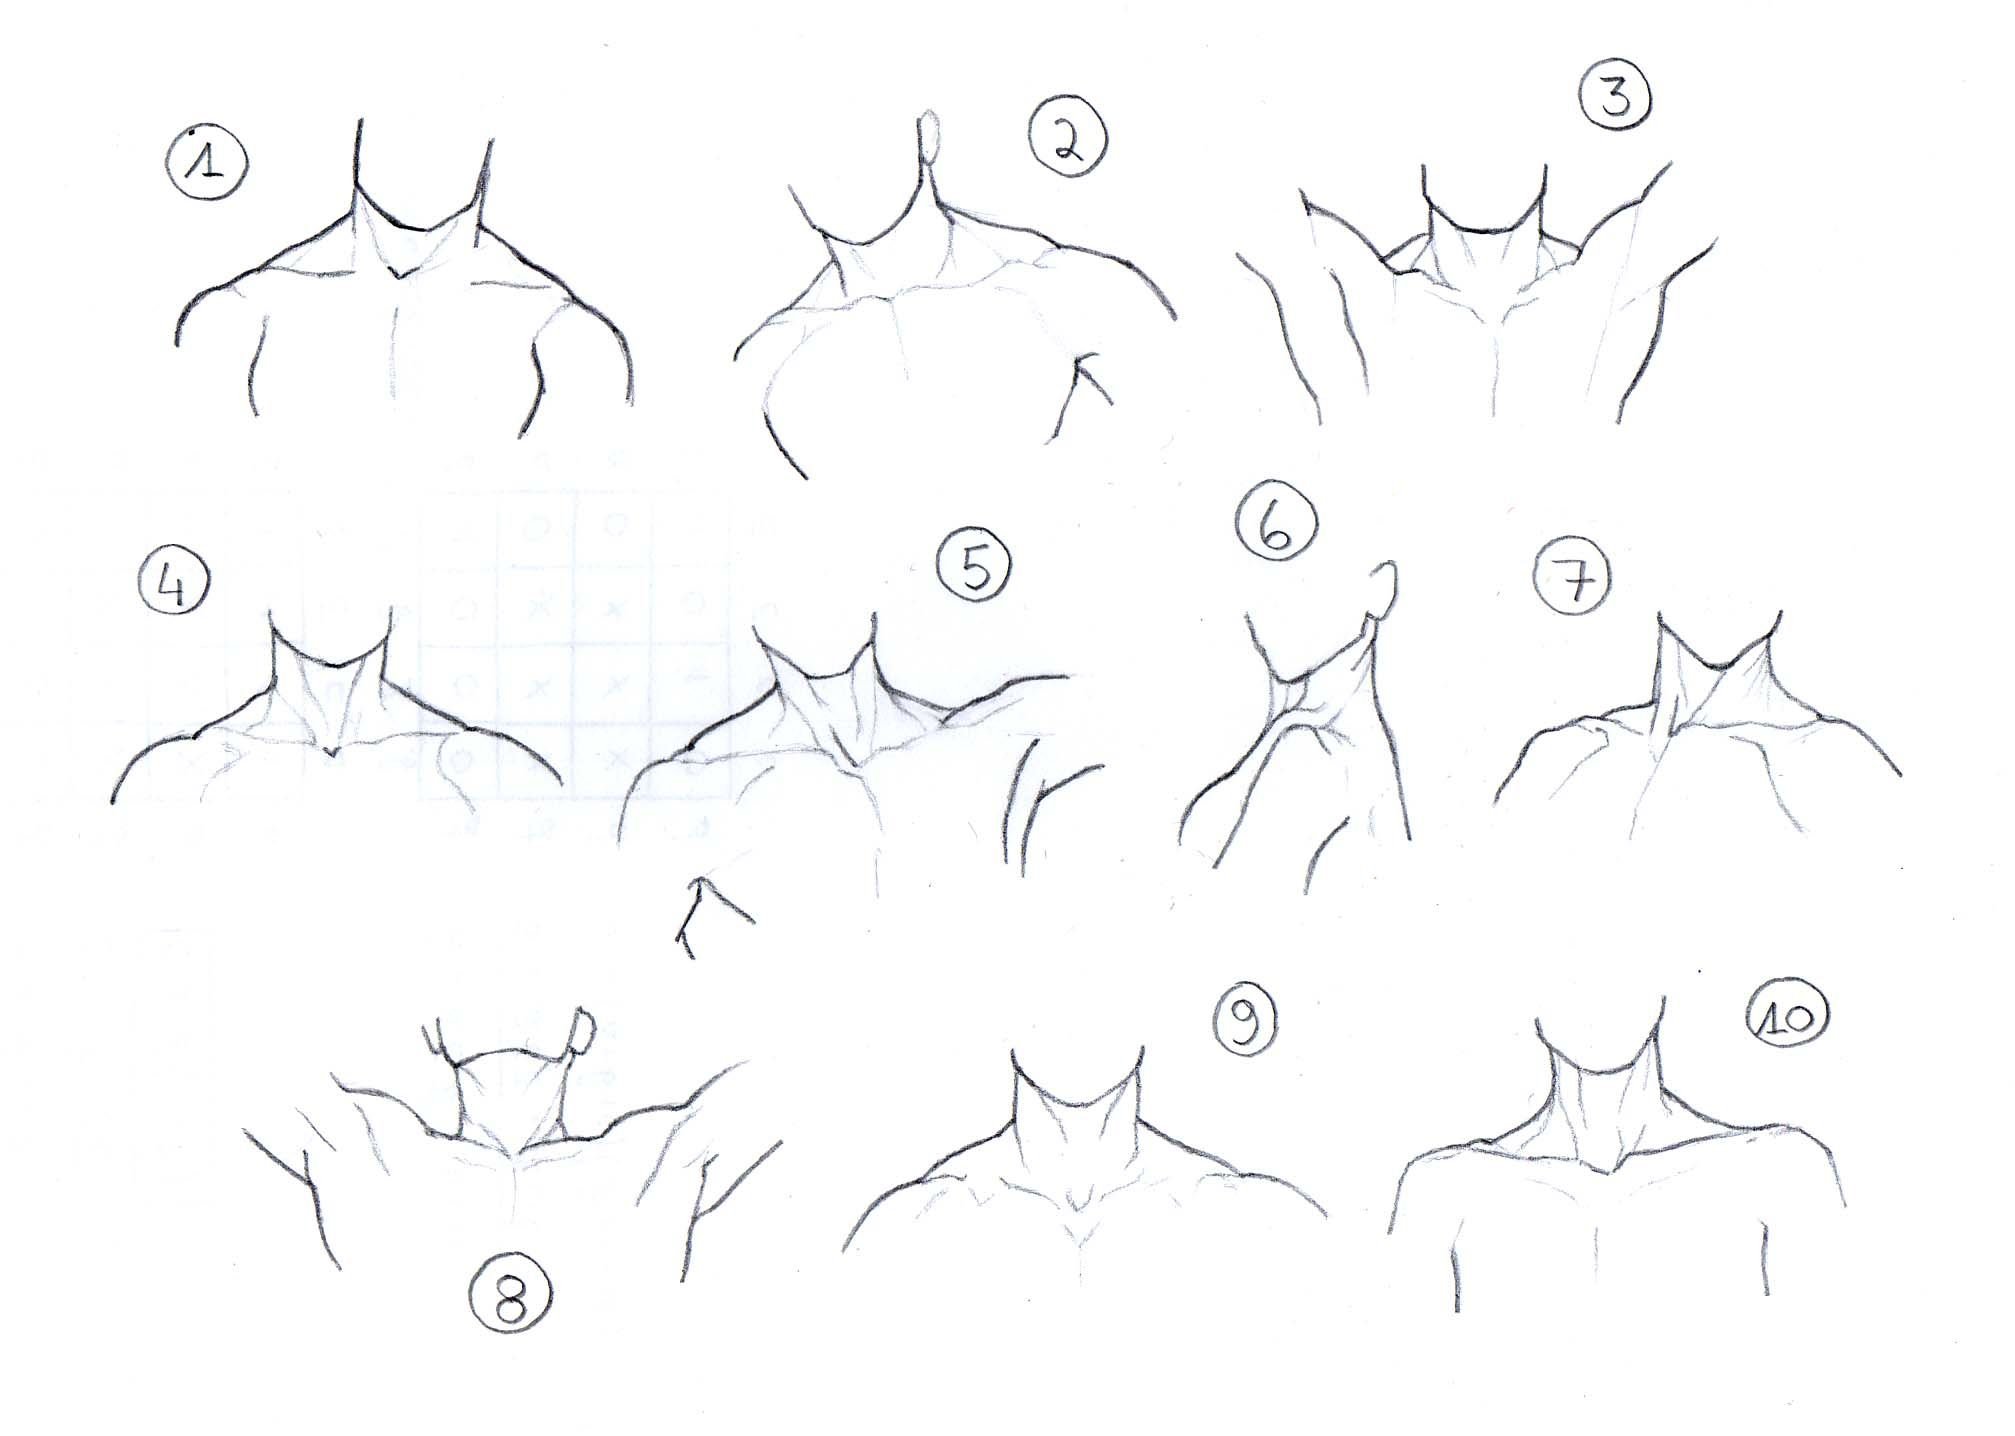 как нарисовать грудь как у аниме фото 7